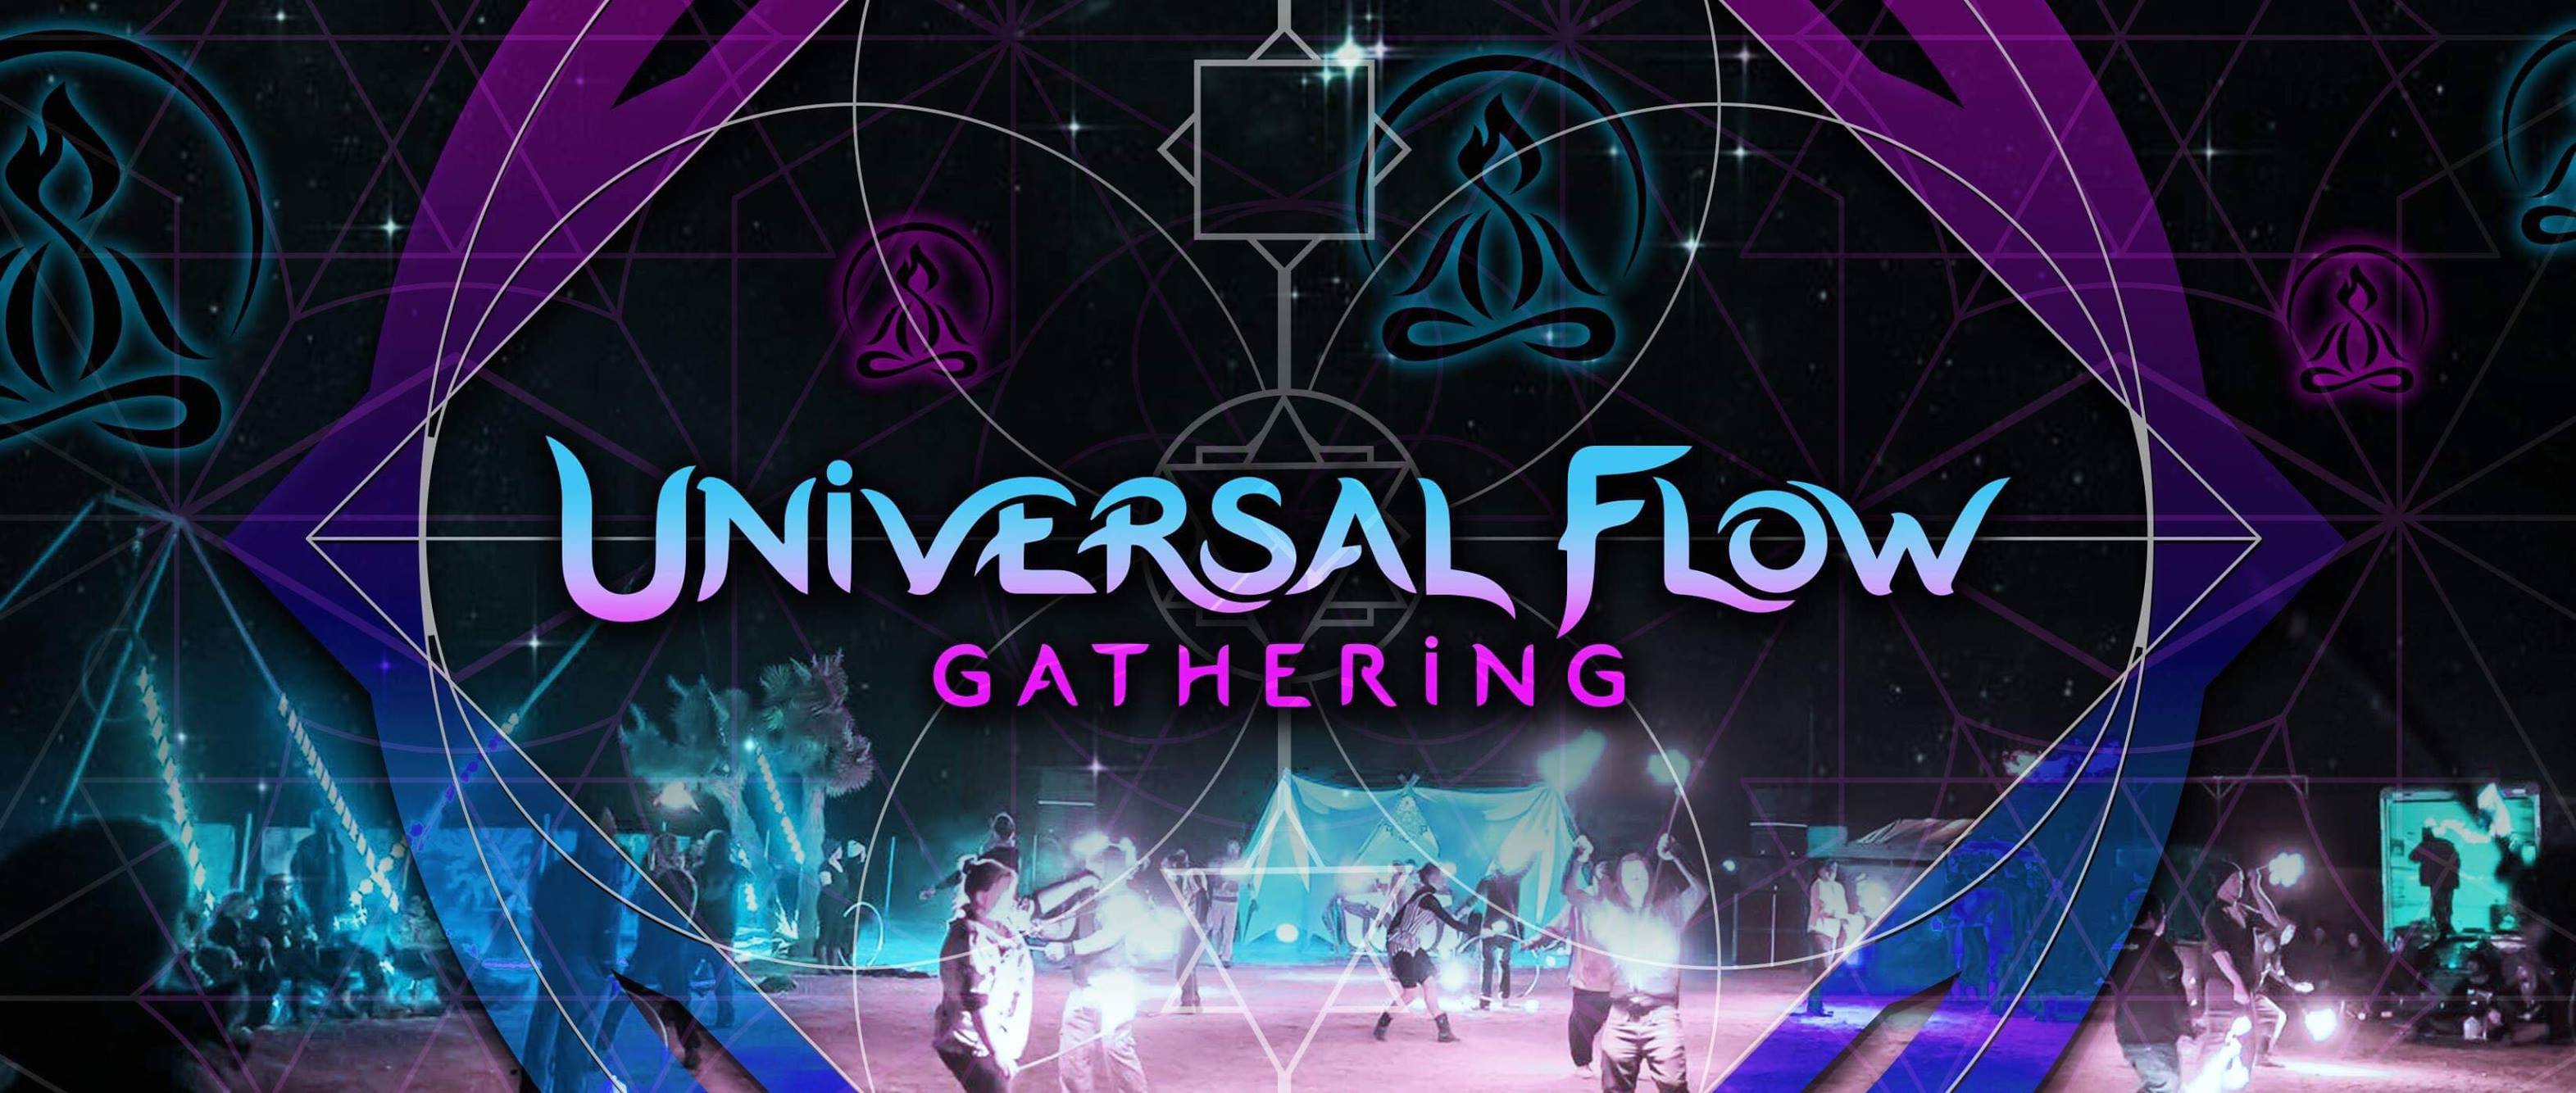 Universal Flow Gathering 2019